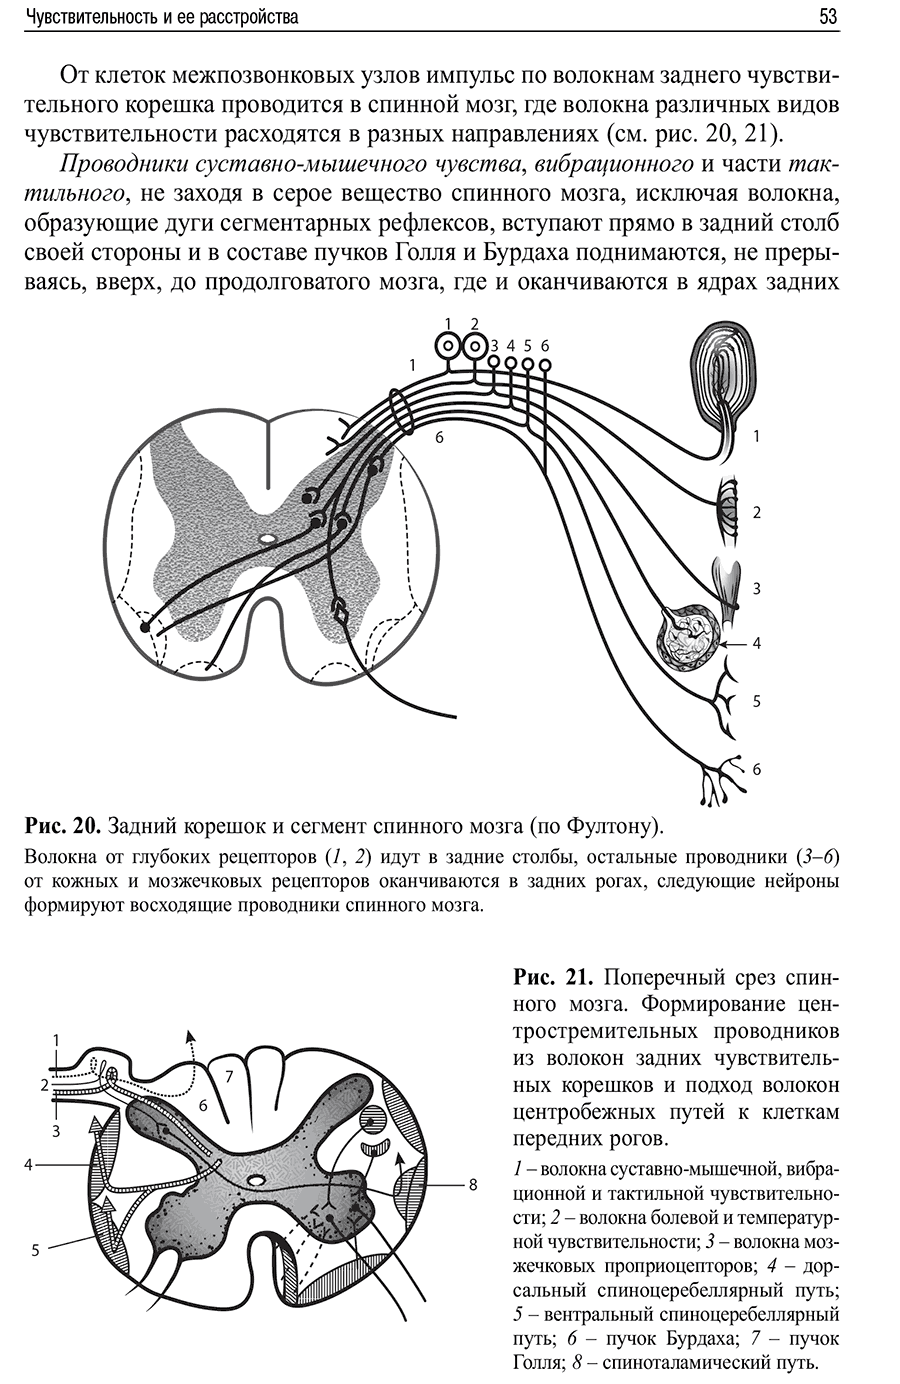 Рис. 20. Задний корешок и сегмент спинного мозга (по Фултону)